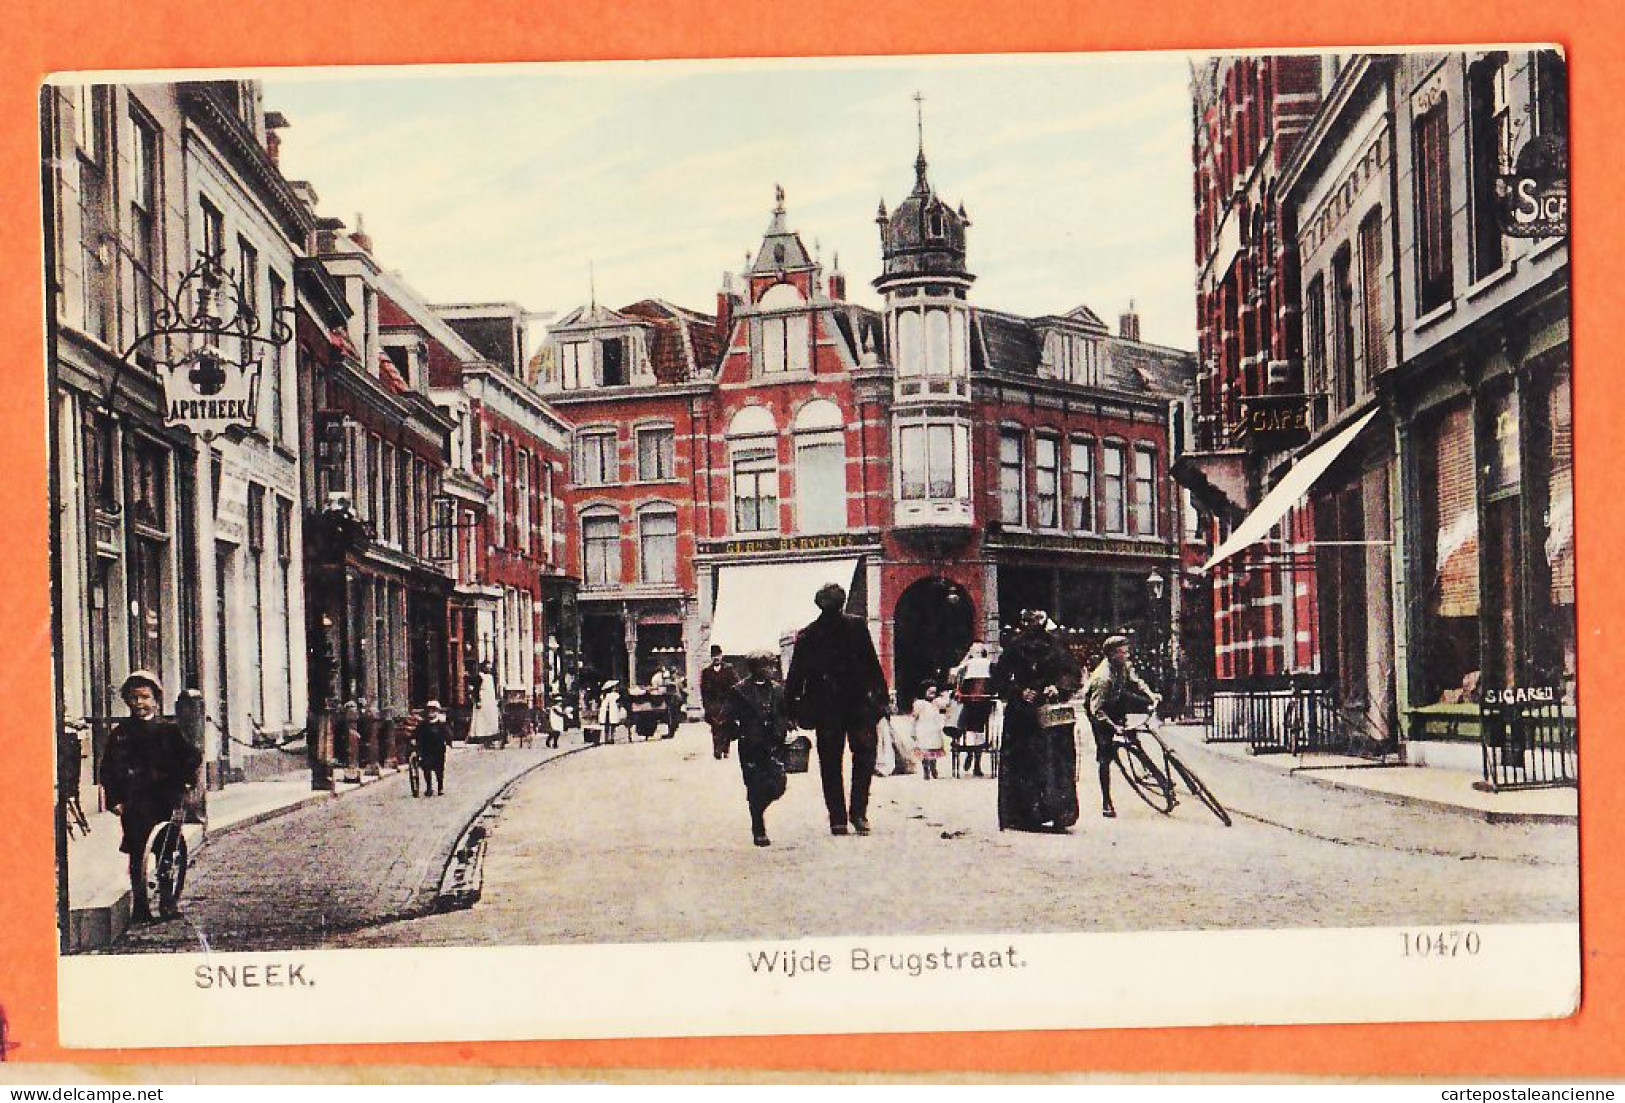 05078 ● SNEEK Friesland Wijde Brugstraat Straatbeeld Scène Rue 1910s NAUTA Velsen 10470 Nederland Niederlande Pays-Bas - Sneek